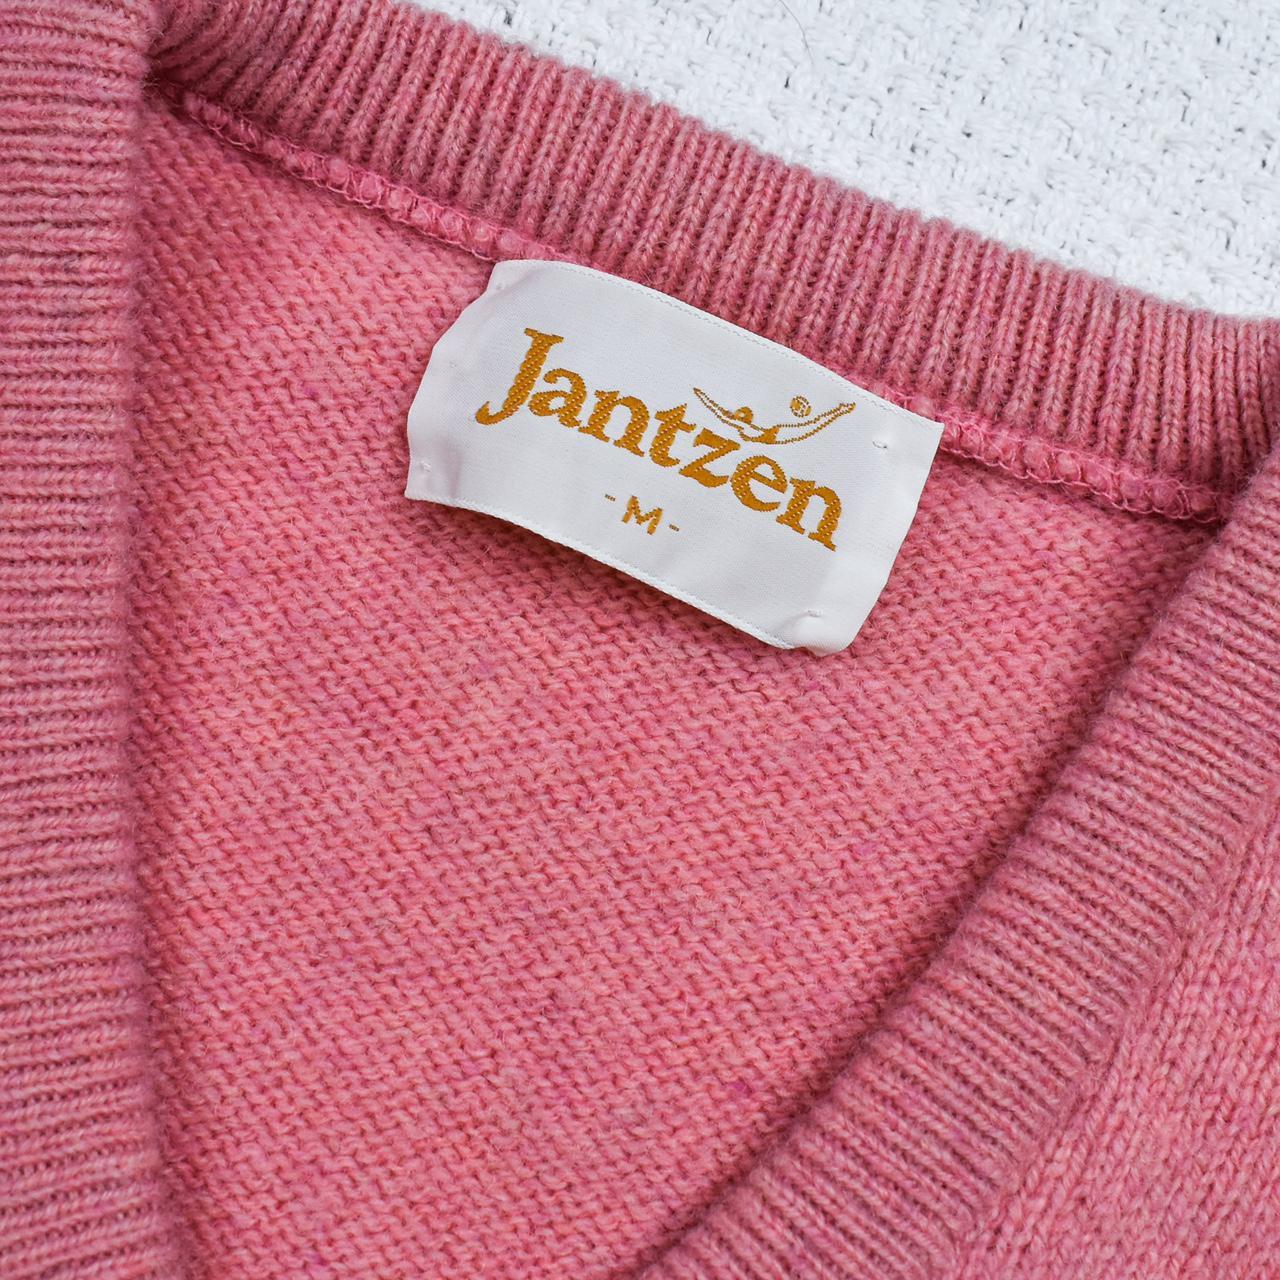 Vintage pink v-neck sweater Long sleeve v-neck knit... - Depop